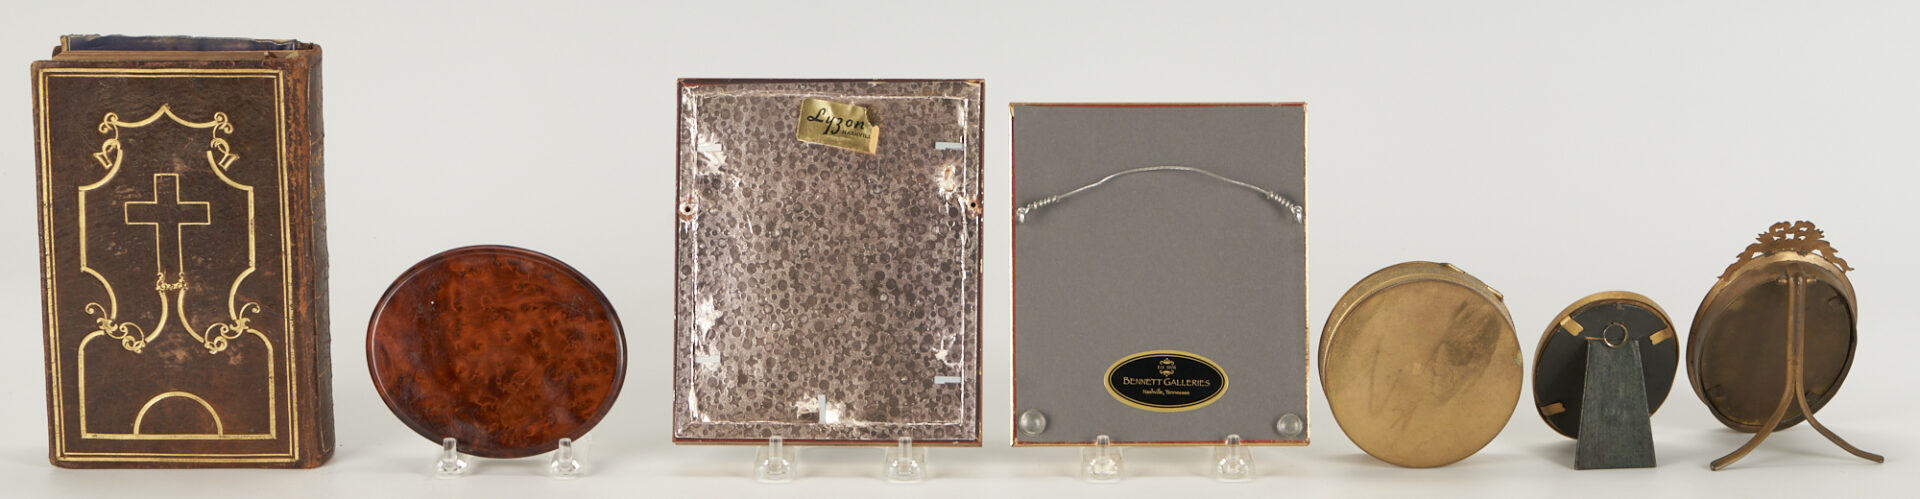 Lot 350: 12 Miniature Portrait Items, incl. Military, Book, Cigar Case, Boxes